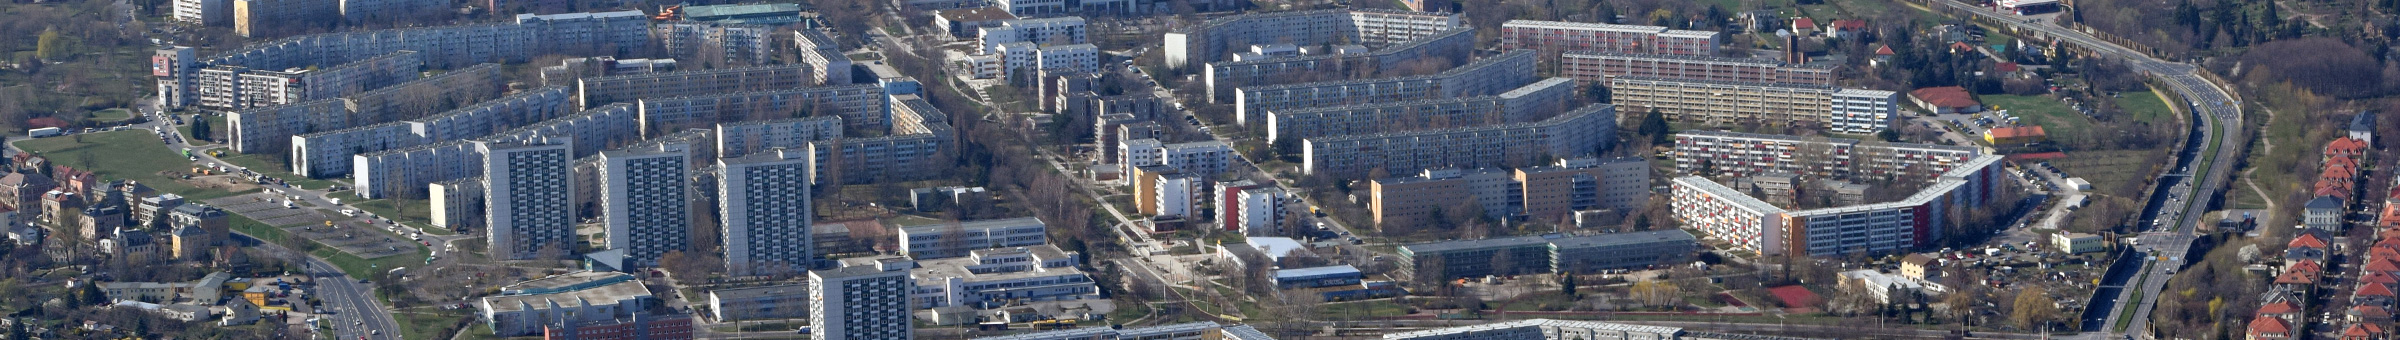 Luftbild Gorbitz und Umgebung